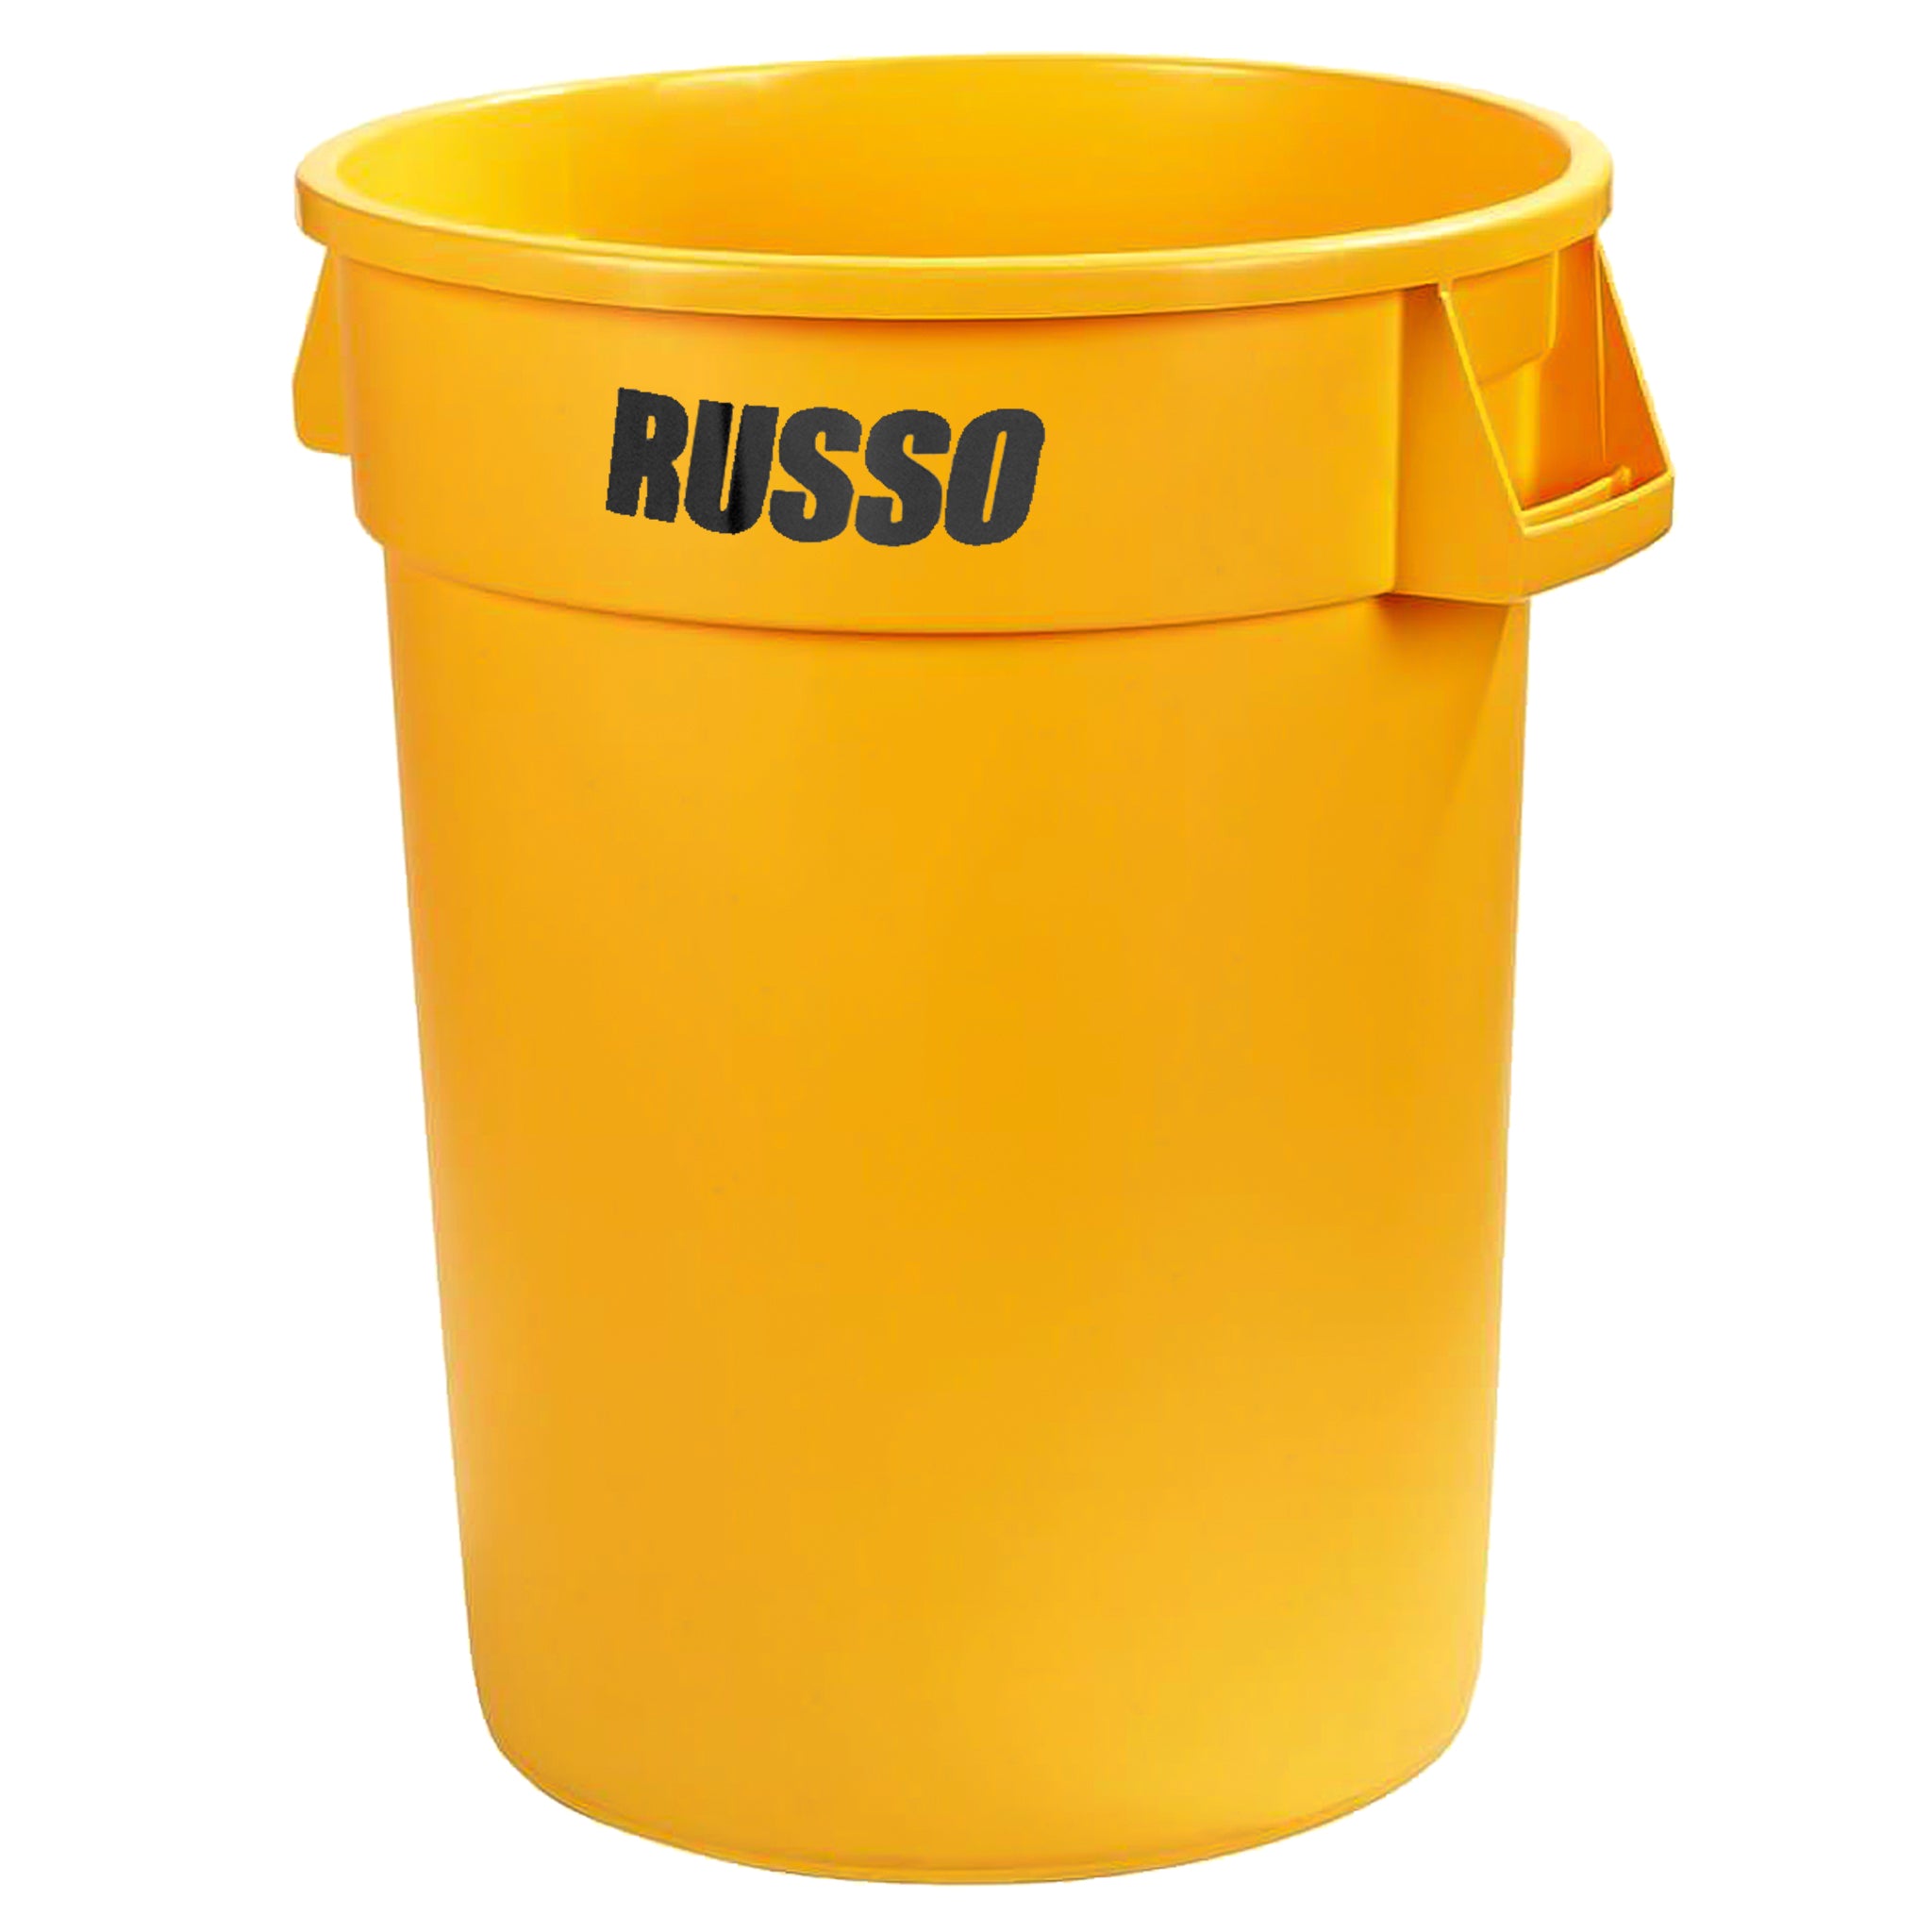 Contenedor de basura Bronco redondo, 32 galones, amarillo